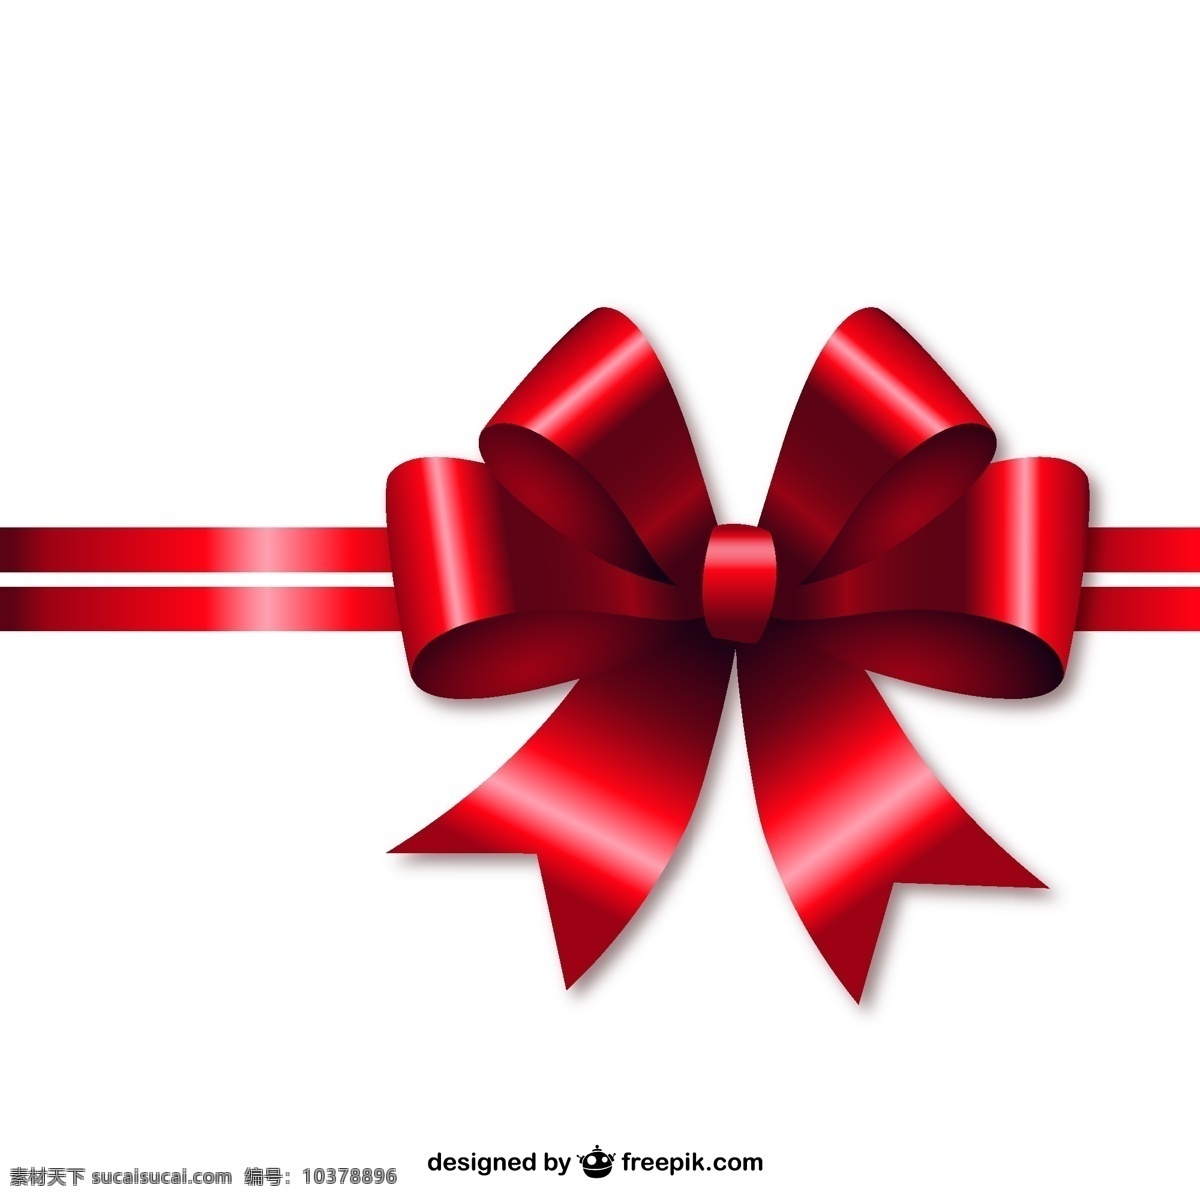 圣诞红丝带 礼品 圣诞礼品 装饰品 红 丝带 装饰 红丝带 礼品带 圣诞装饰 圣诞装饰品 白色